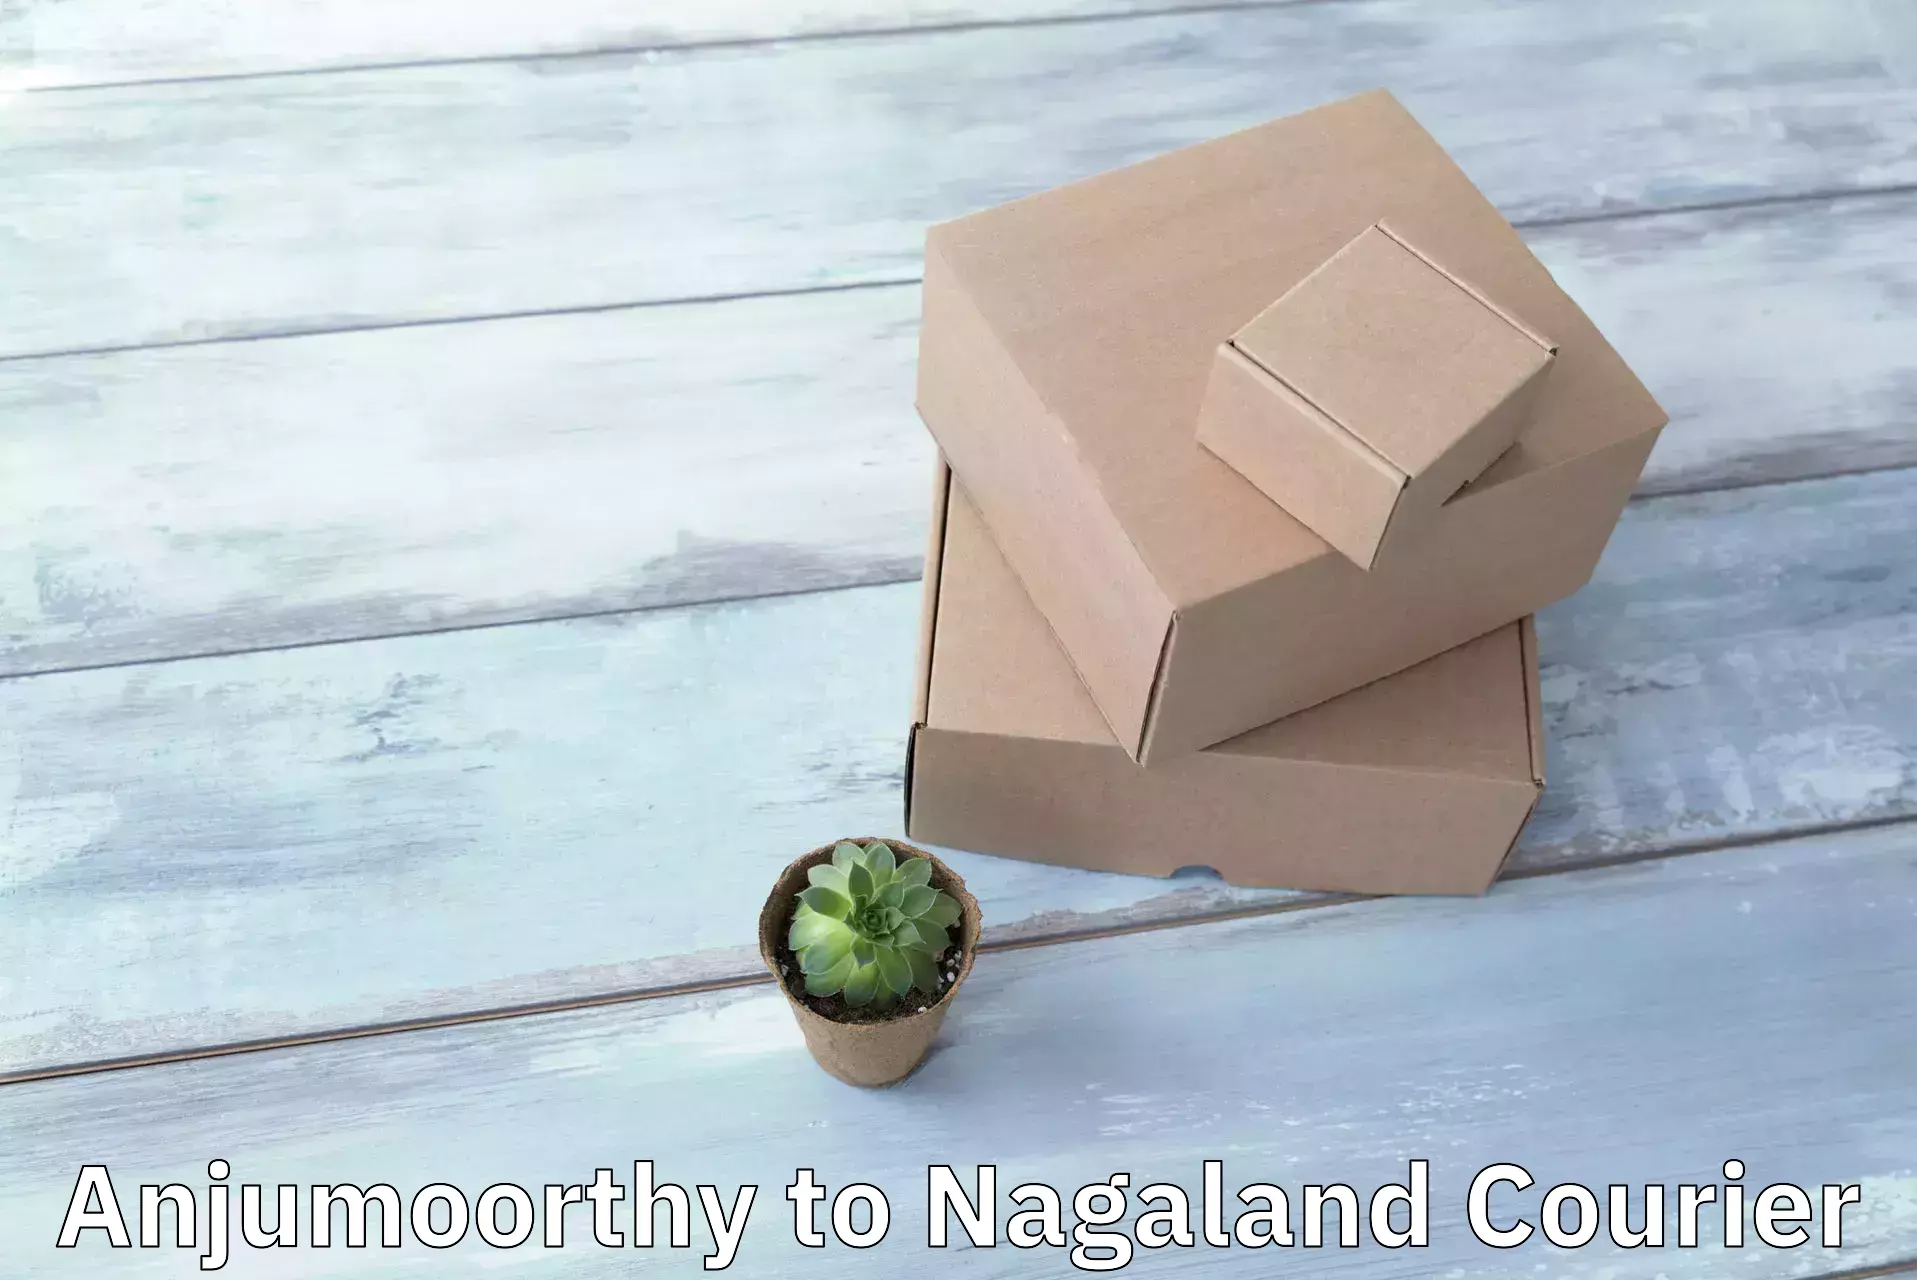 Commercial shipping rates Anjumoorthy to NIT Nagaland